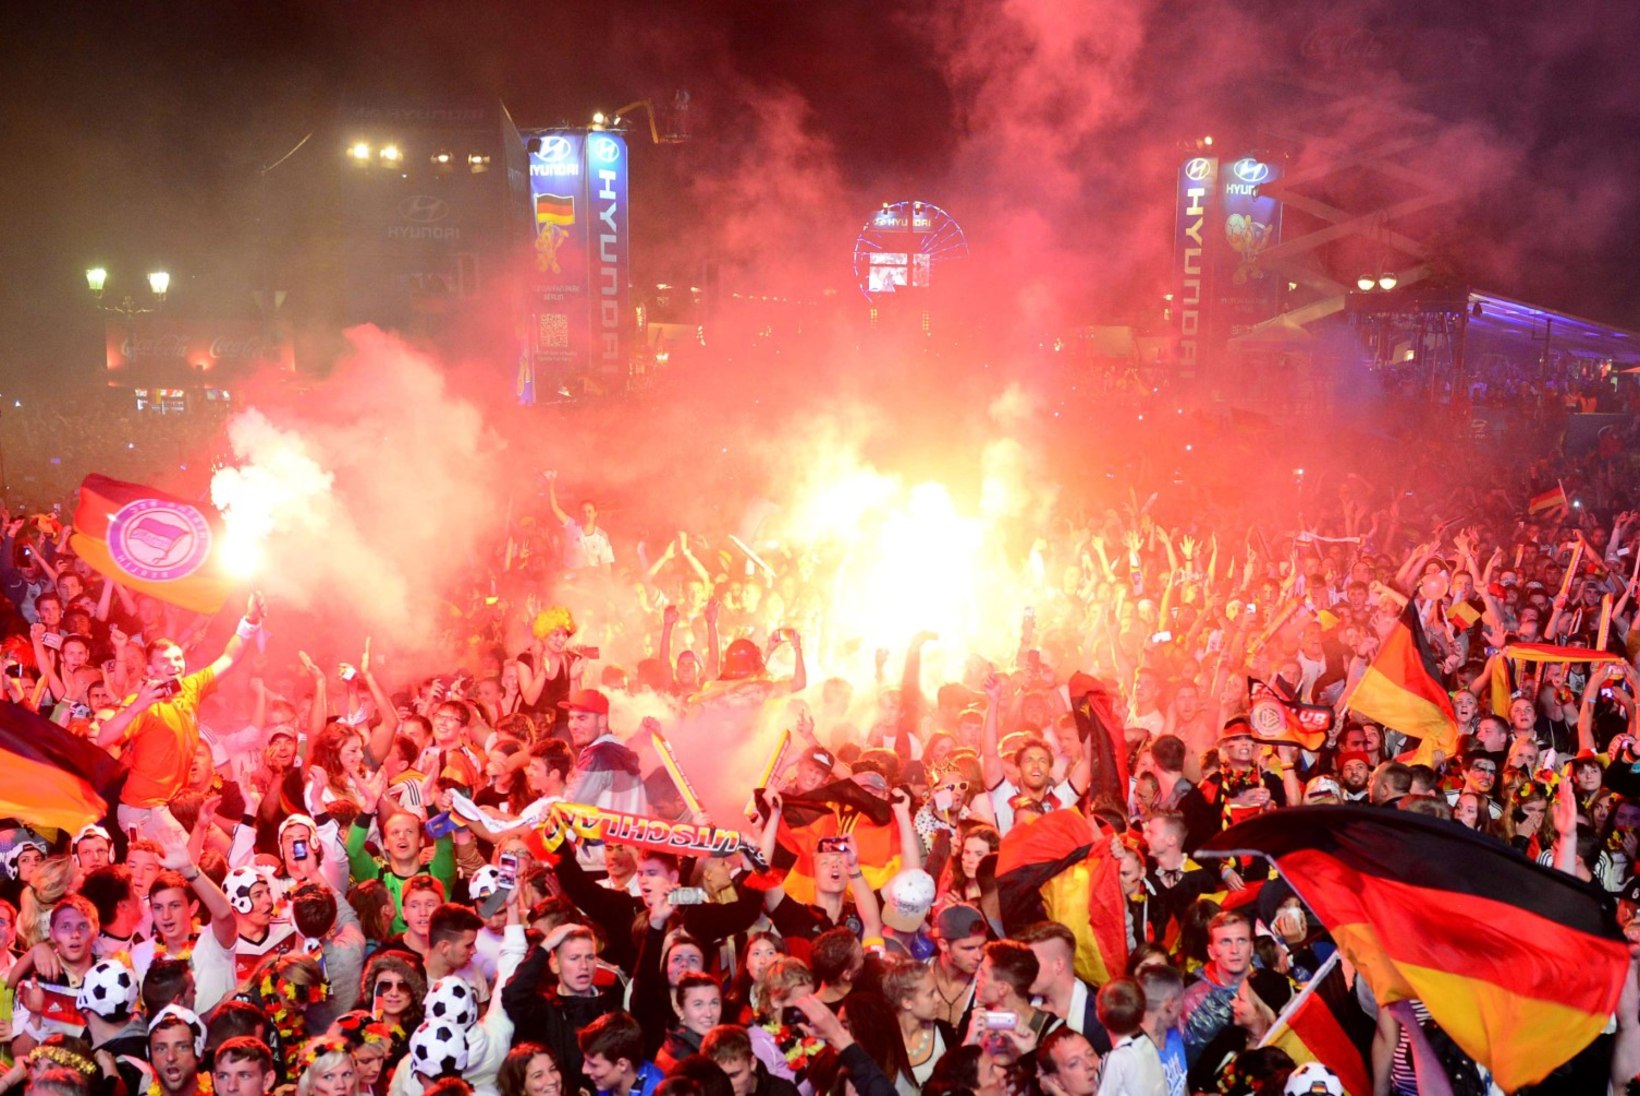 GALERII: Saksamaa tähistab neljandat jalgpalli MM-tiitlit!